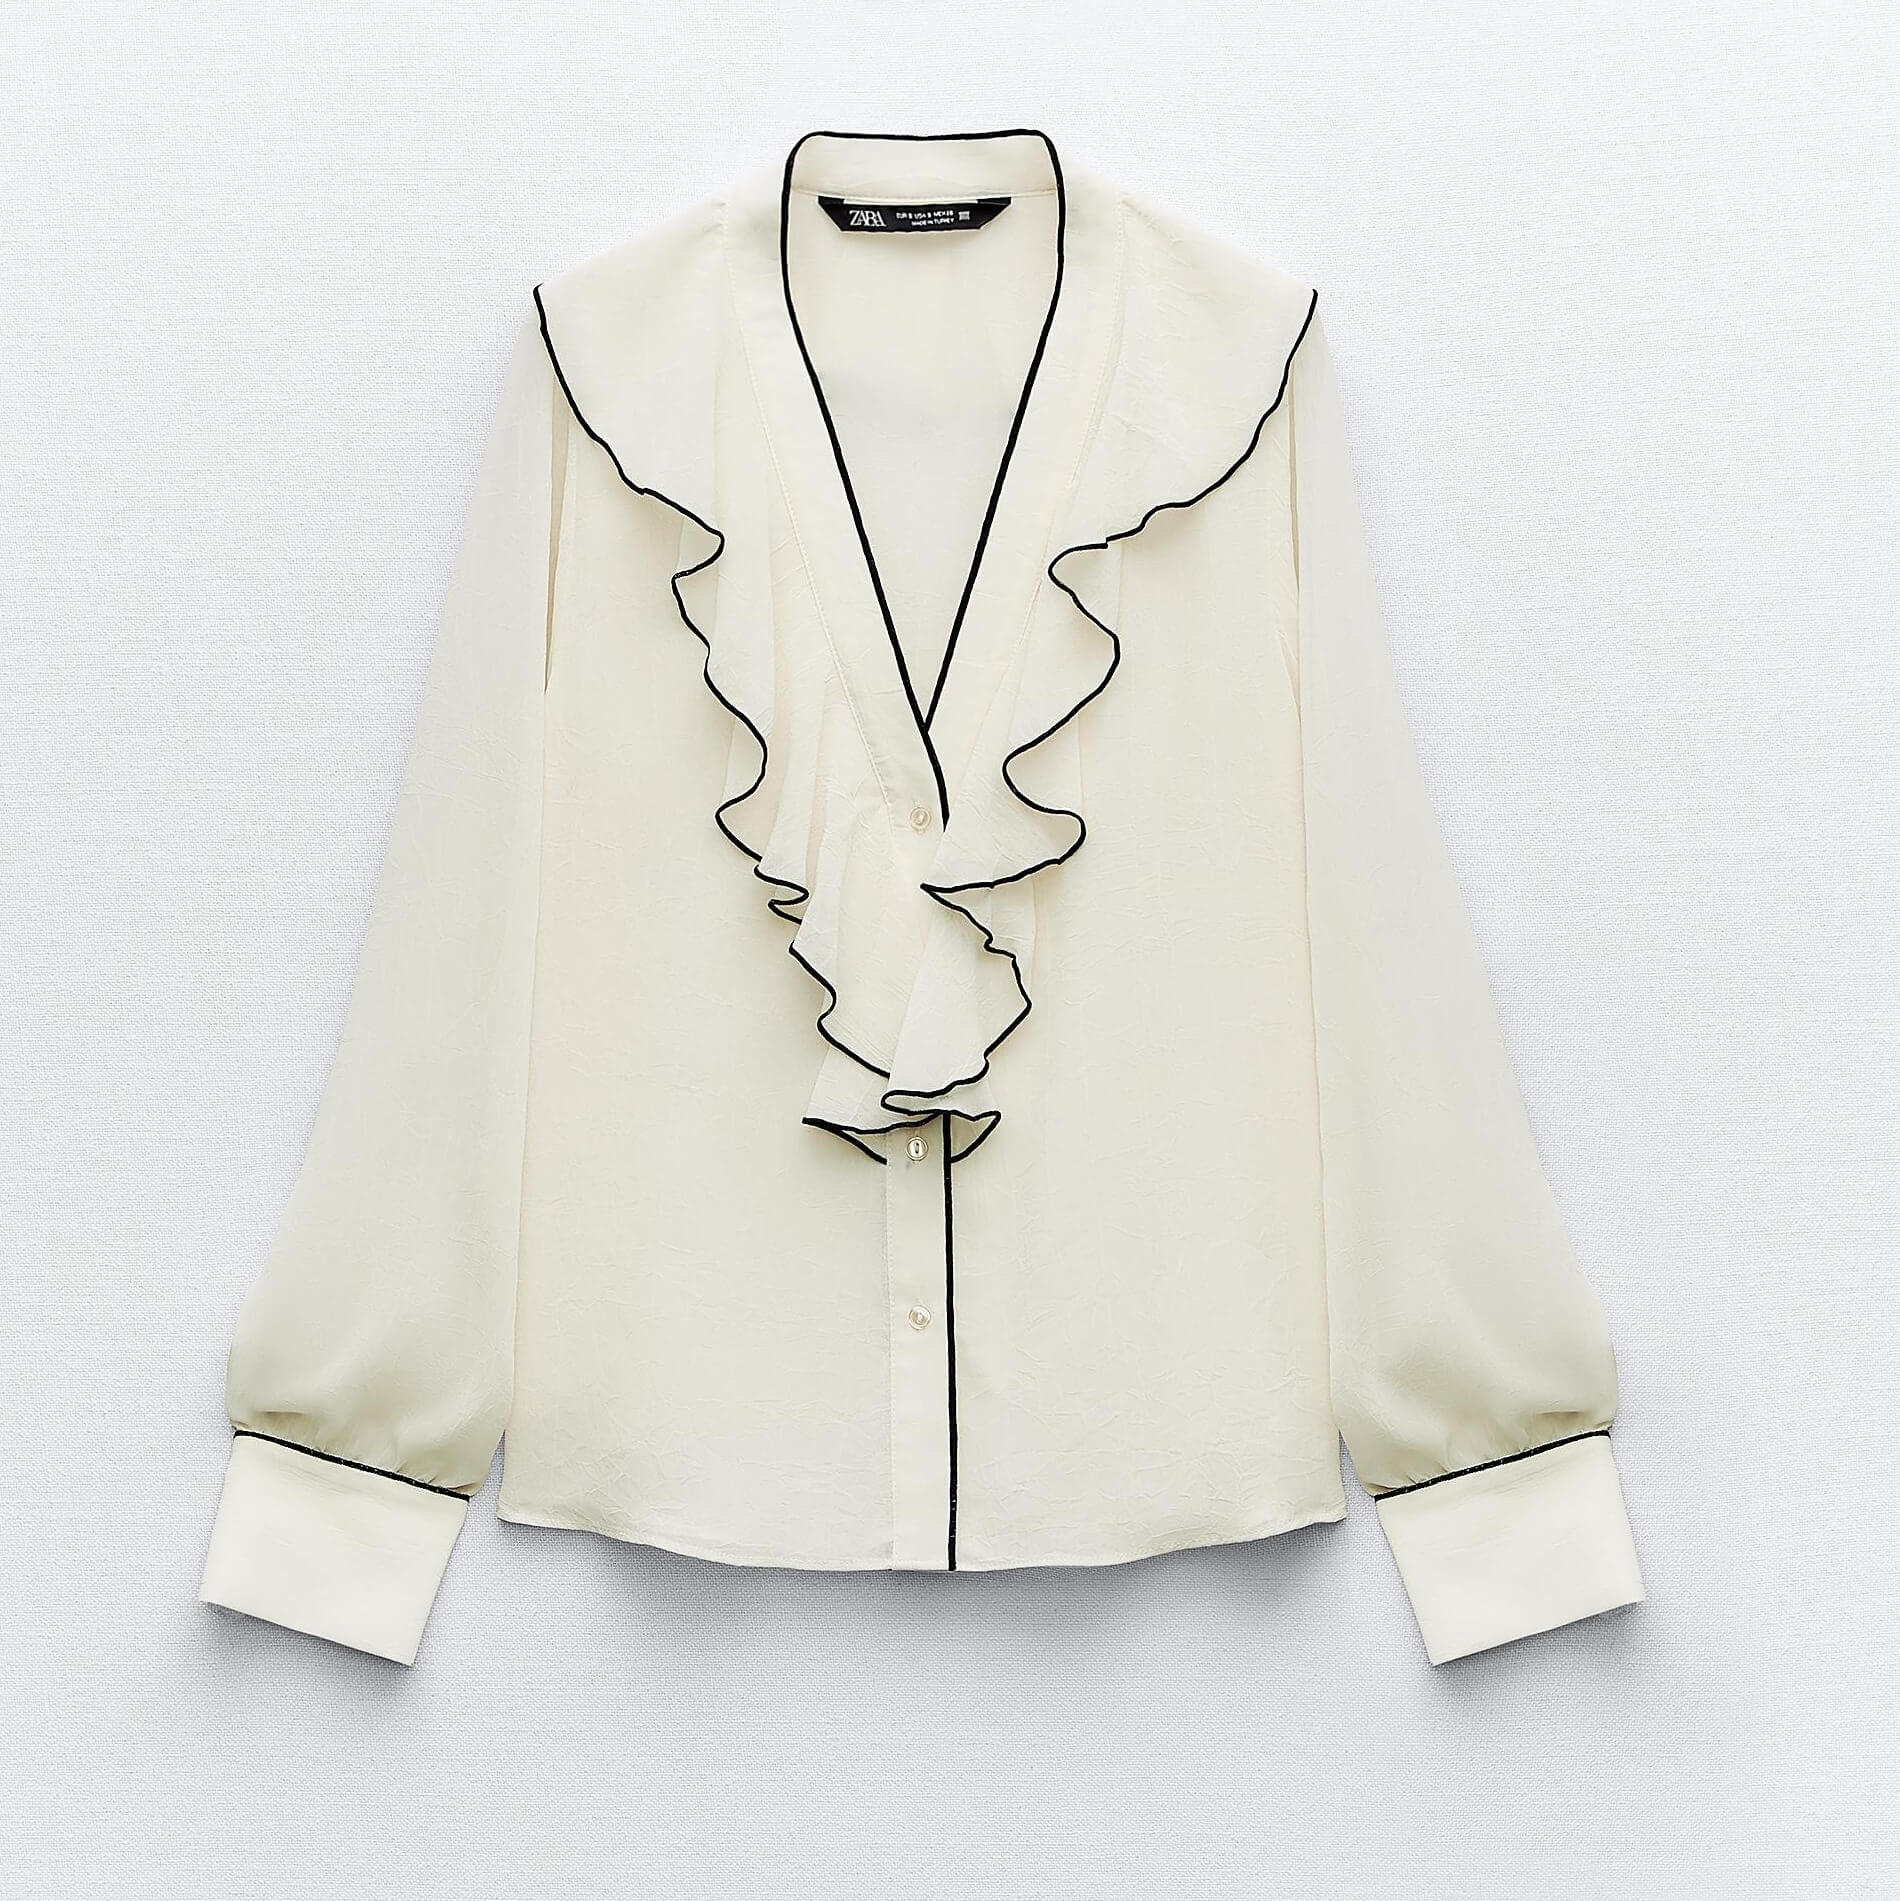 Блузка ZaraRuffled With Contrast Piping, светло-бежевый платье миди с v образным вырезом длинным рукавом фонариком и оборками